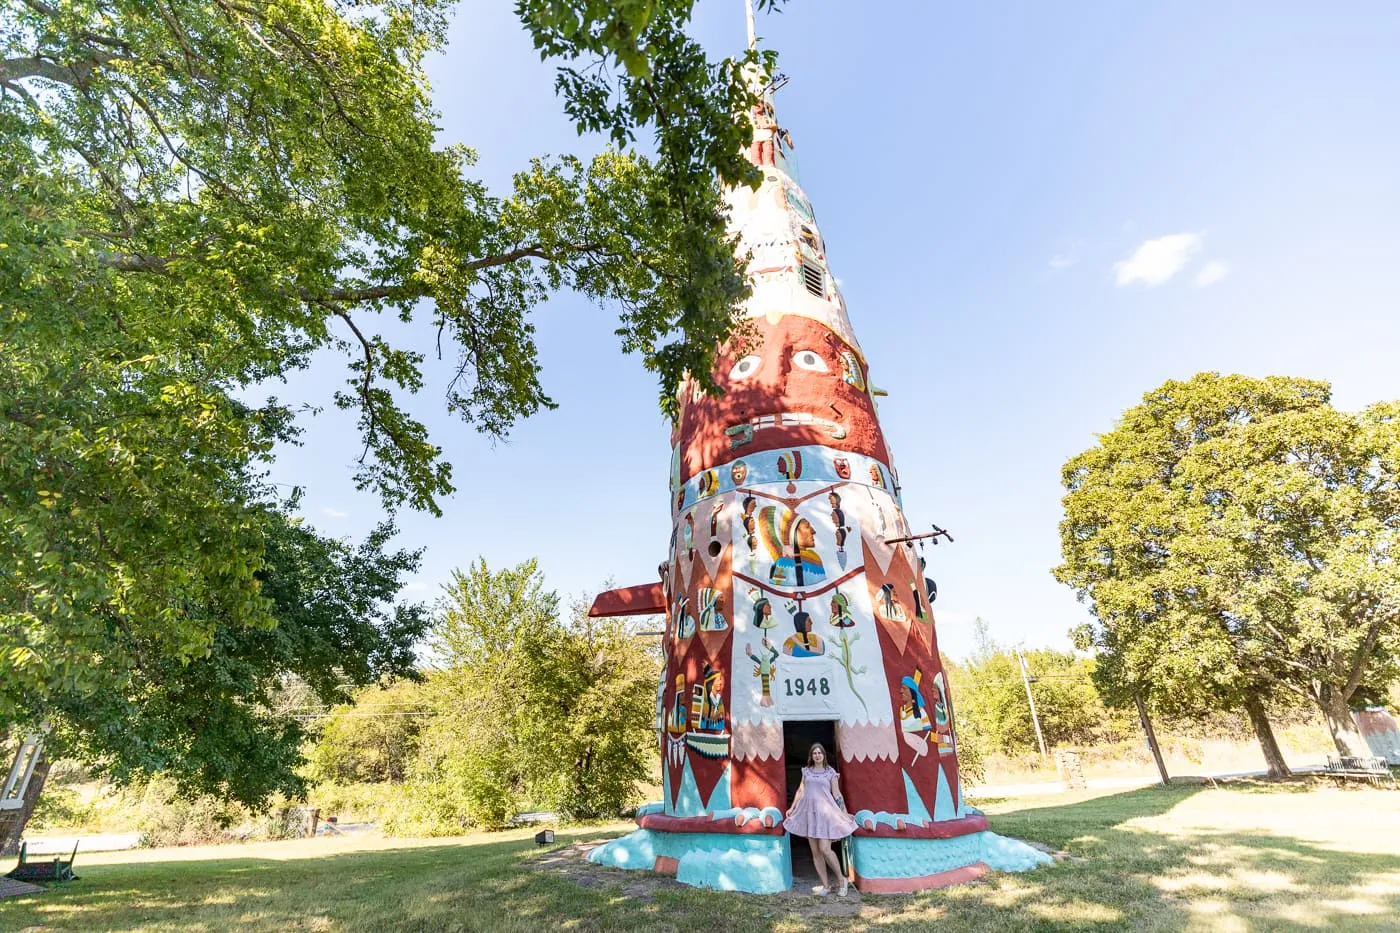 Ed Galloway's Totem Pole Park in Foyil, Oklahoma